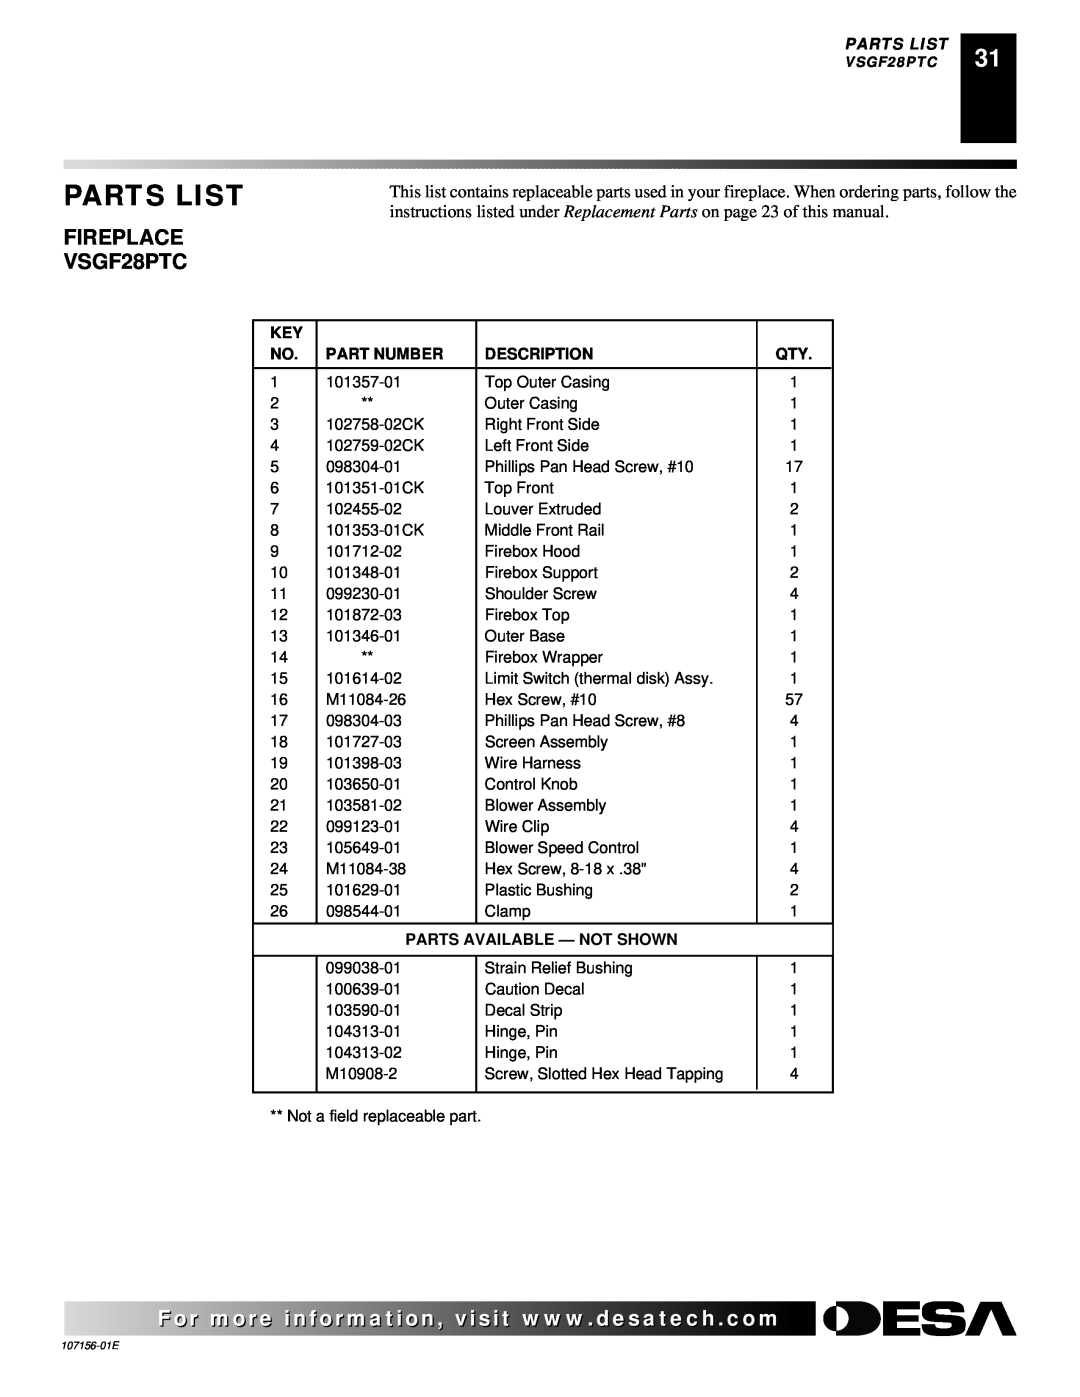 Vanguard Heating 107156-01E.pdf FIREPLACE VSGF28PTC, Parts List, Part Number, Description, Parts Available - Not Shown 